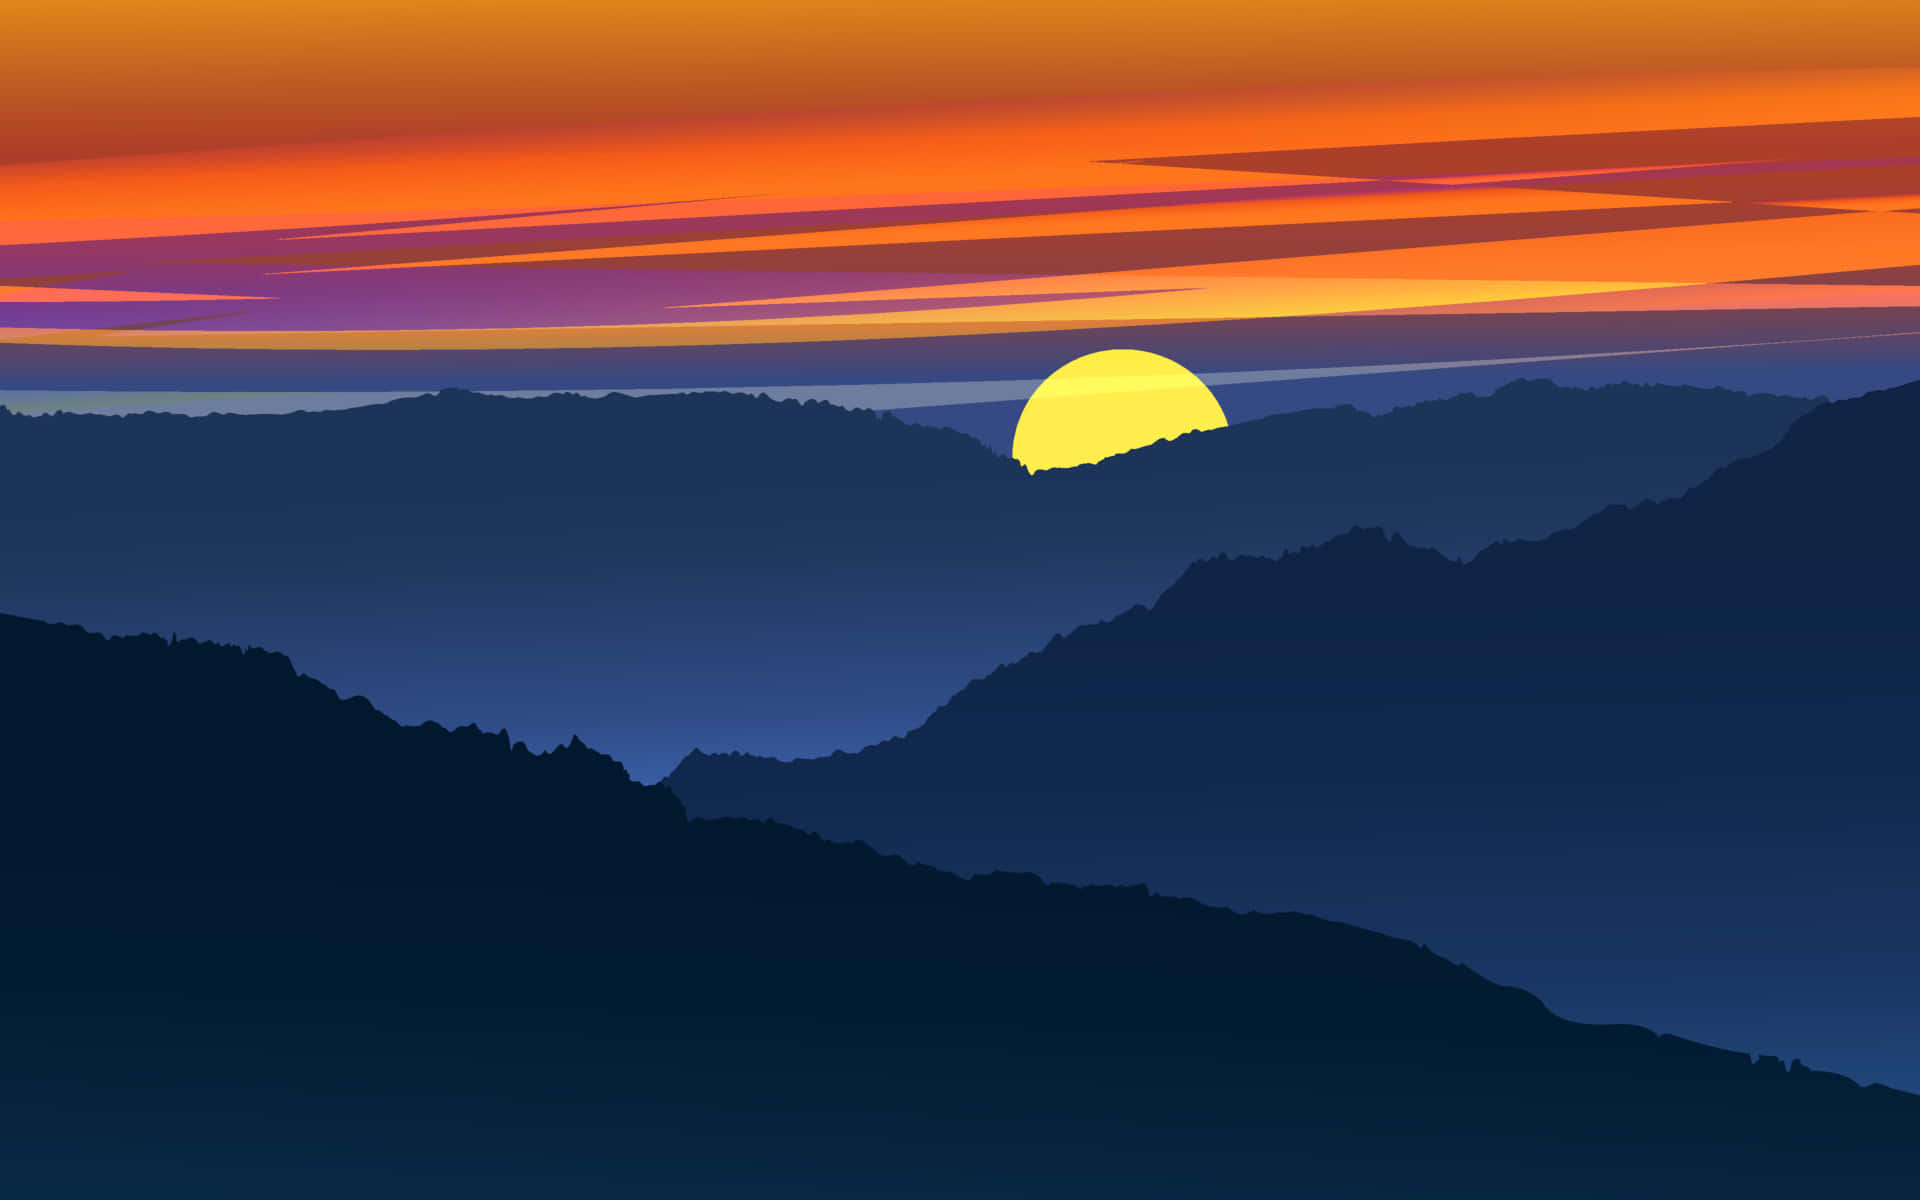 Hermosaimagen Gráfica De La Puesta De Sol En Las Montañas